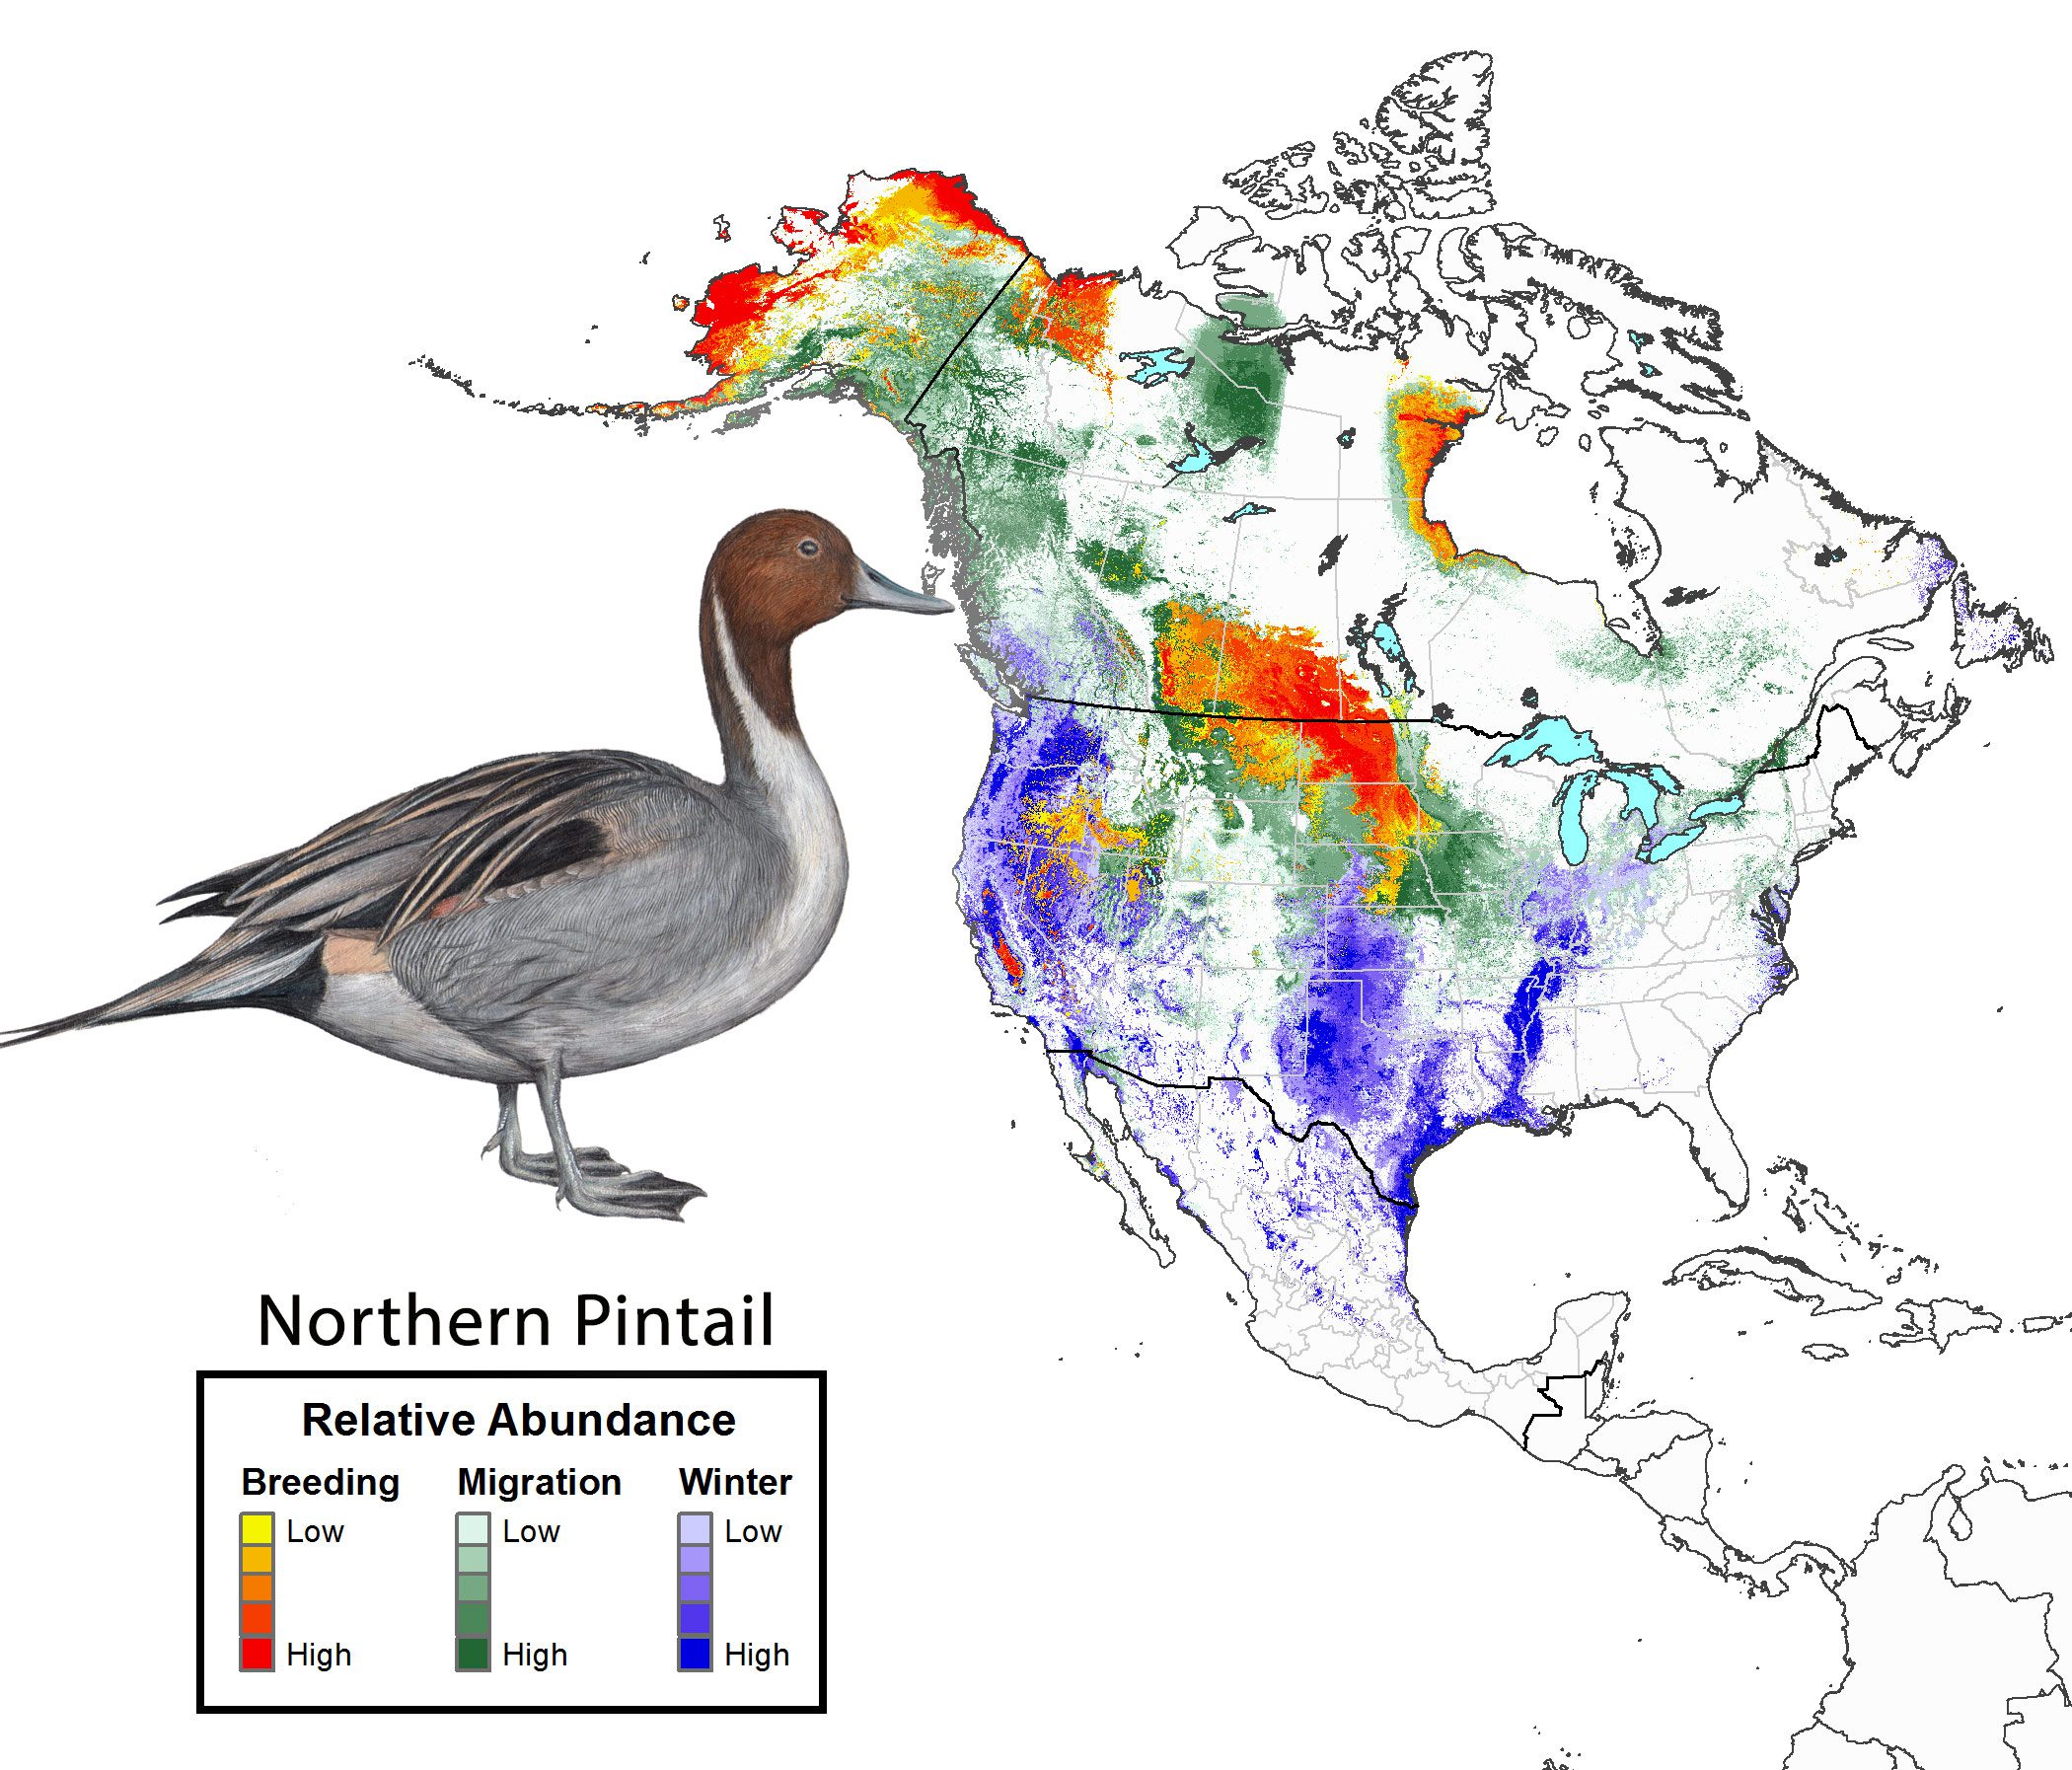 Year-round species abundance for Northern Pintail.